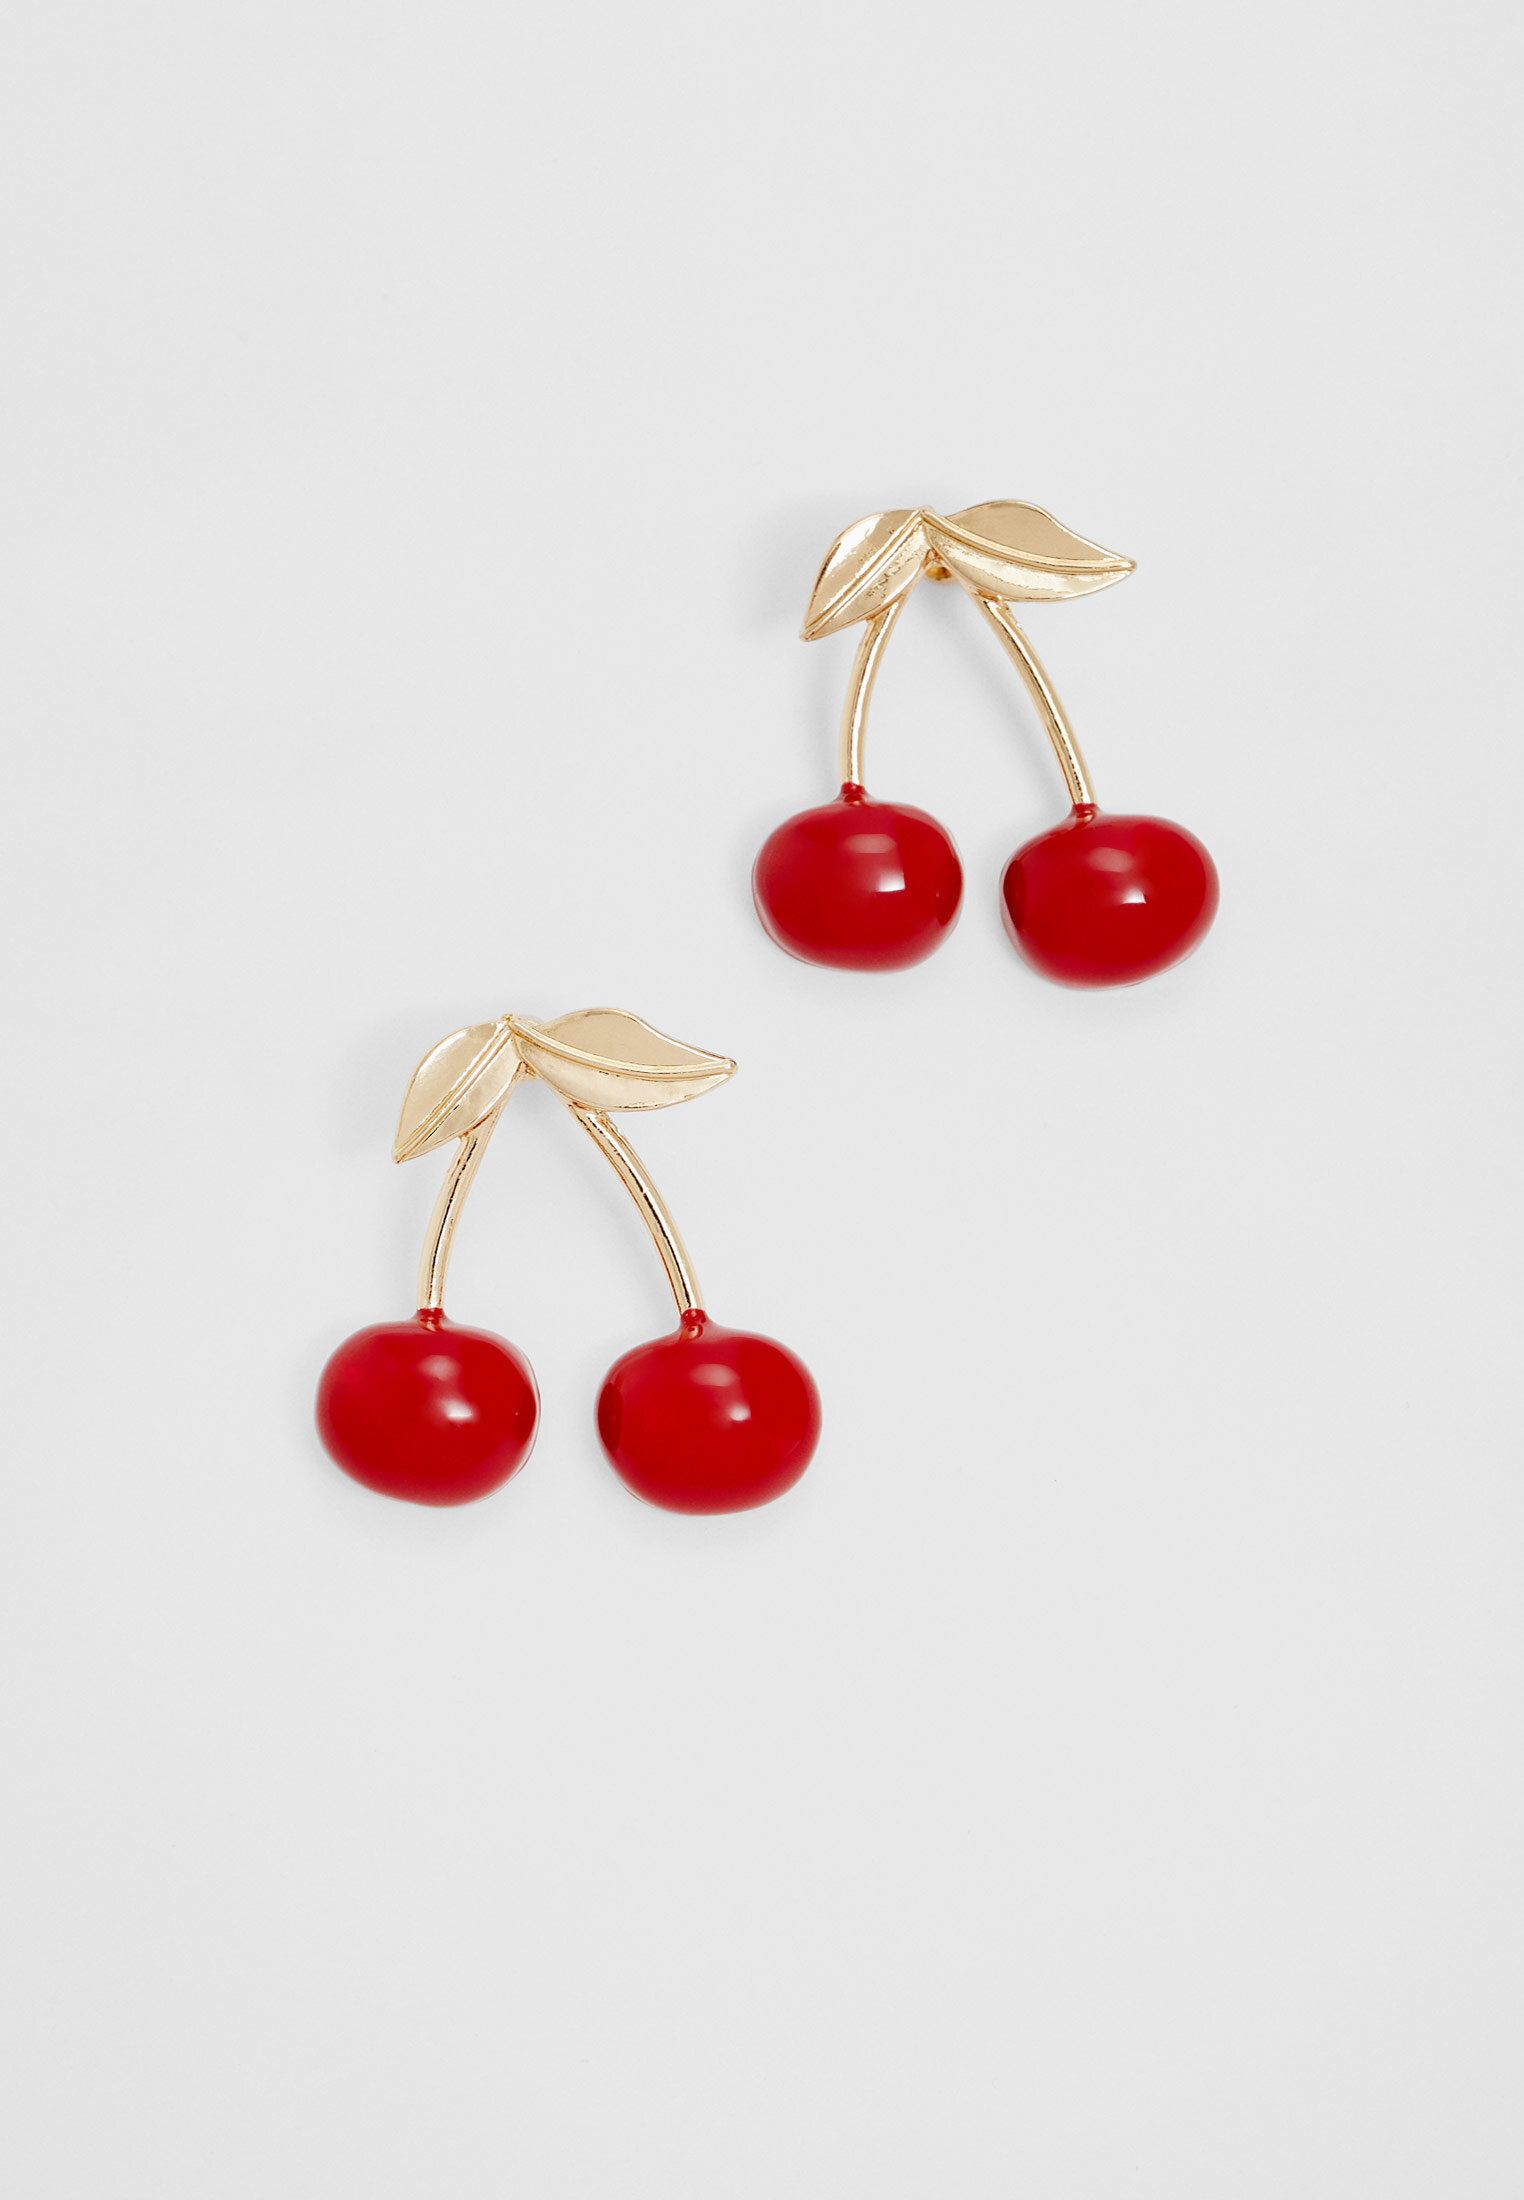 Cherry earrings | Stradivarius (UK)